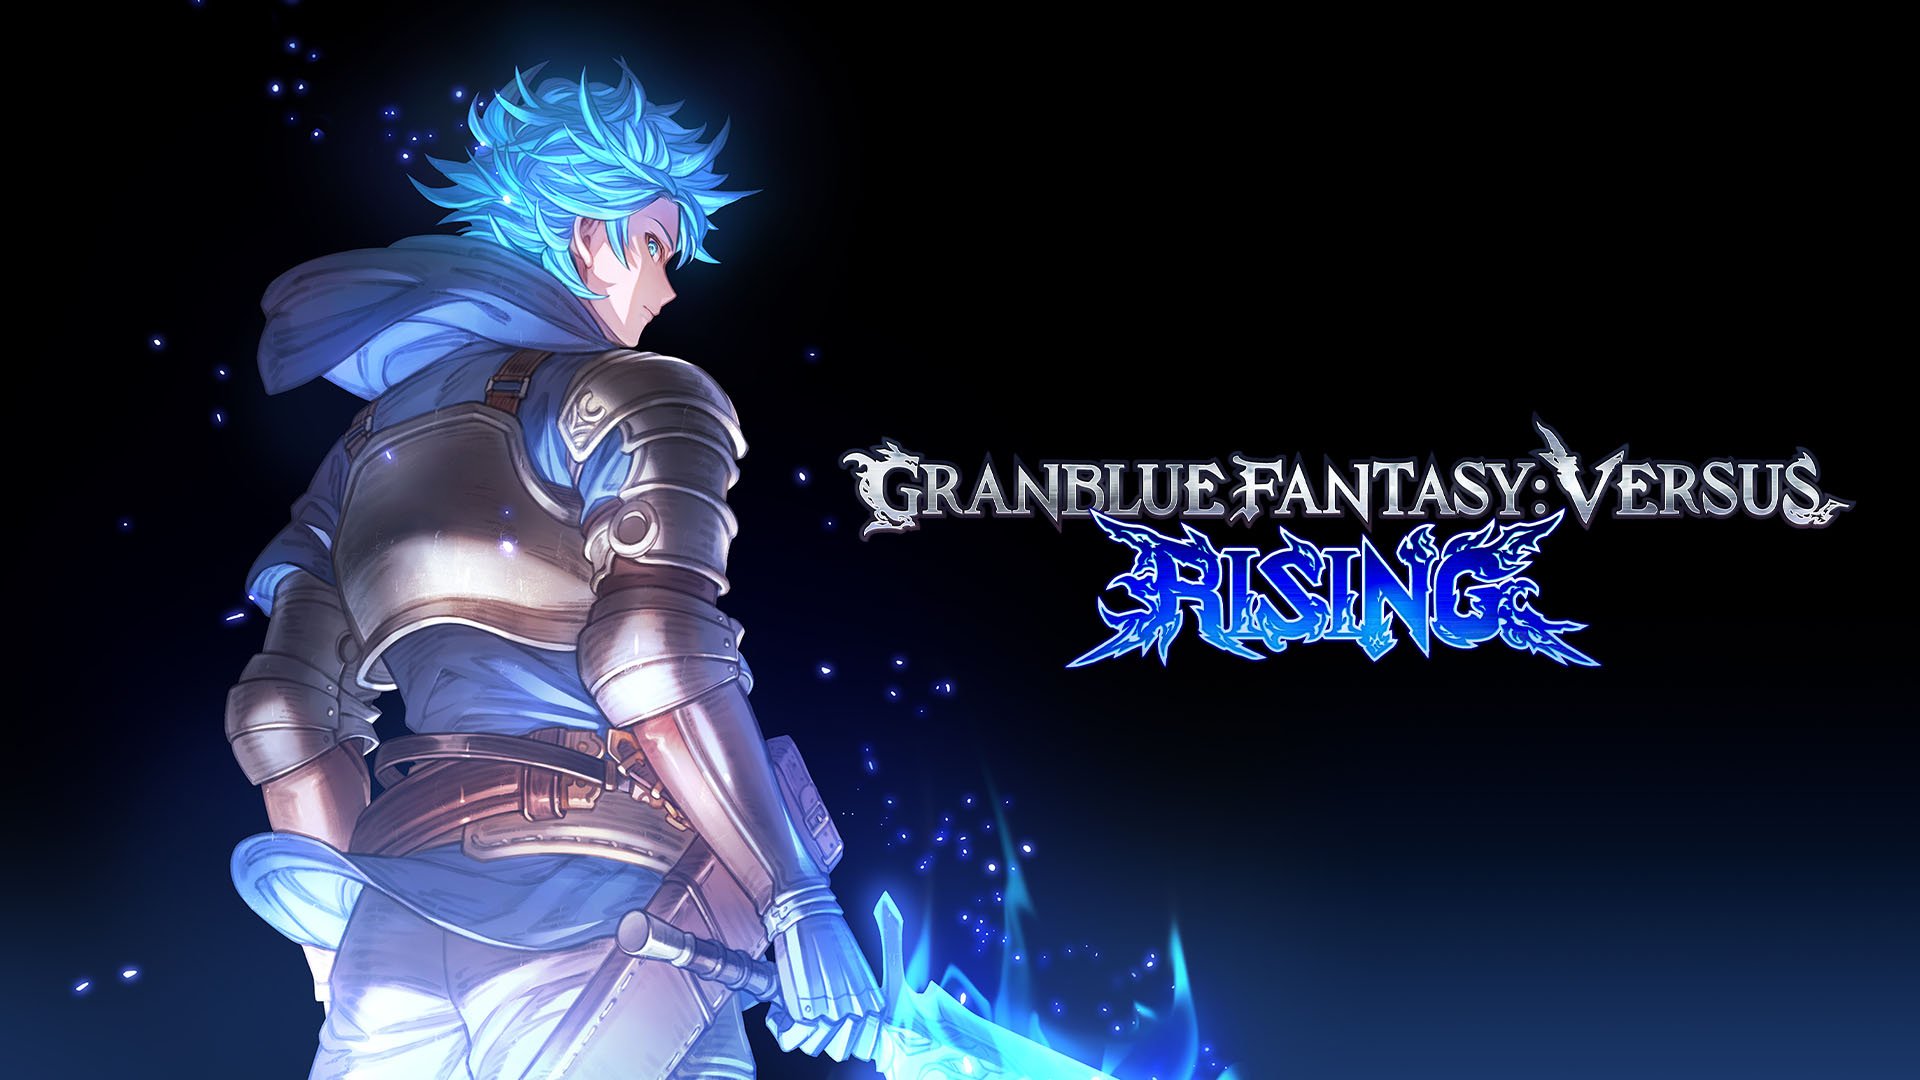 Granblue Fantasy: Versus Rising 已宣布适用于 PS5、PS4 和 PC